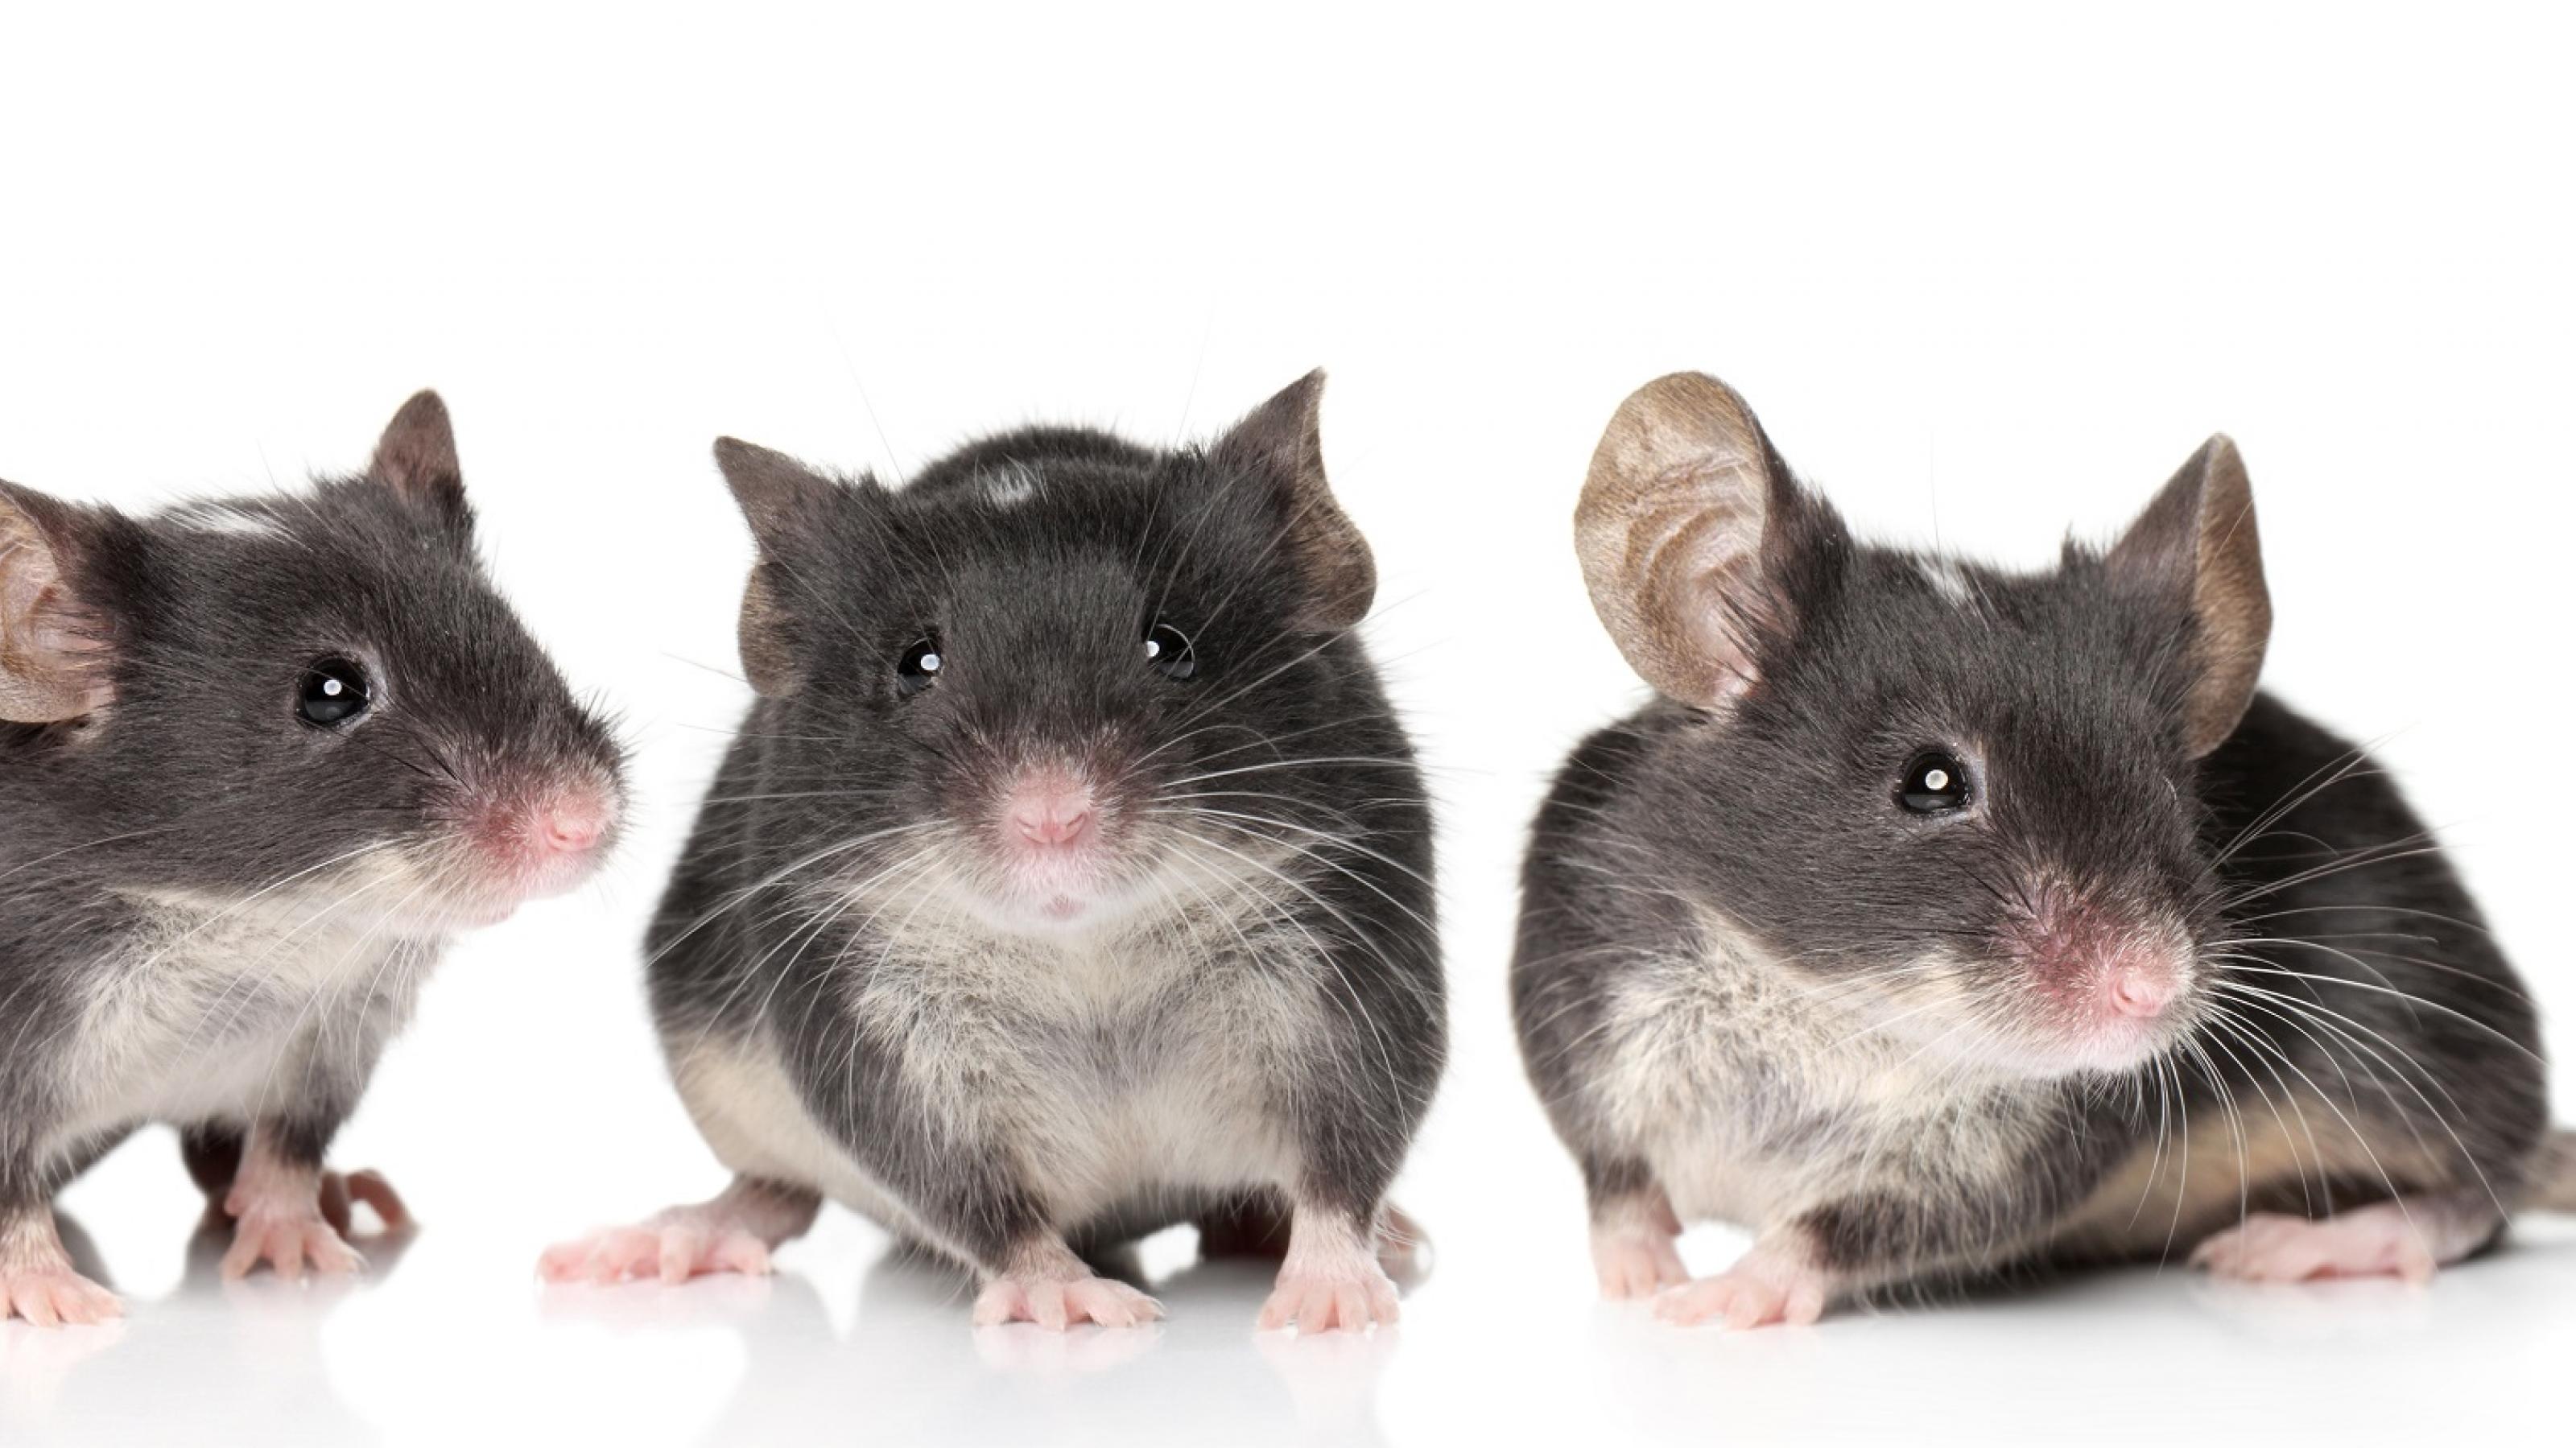 Drei niedliche grau-weiße Mäuse sitzen nebeneinander vor weißem Hintergrund.